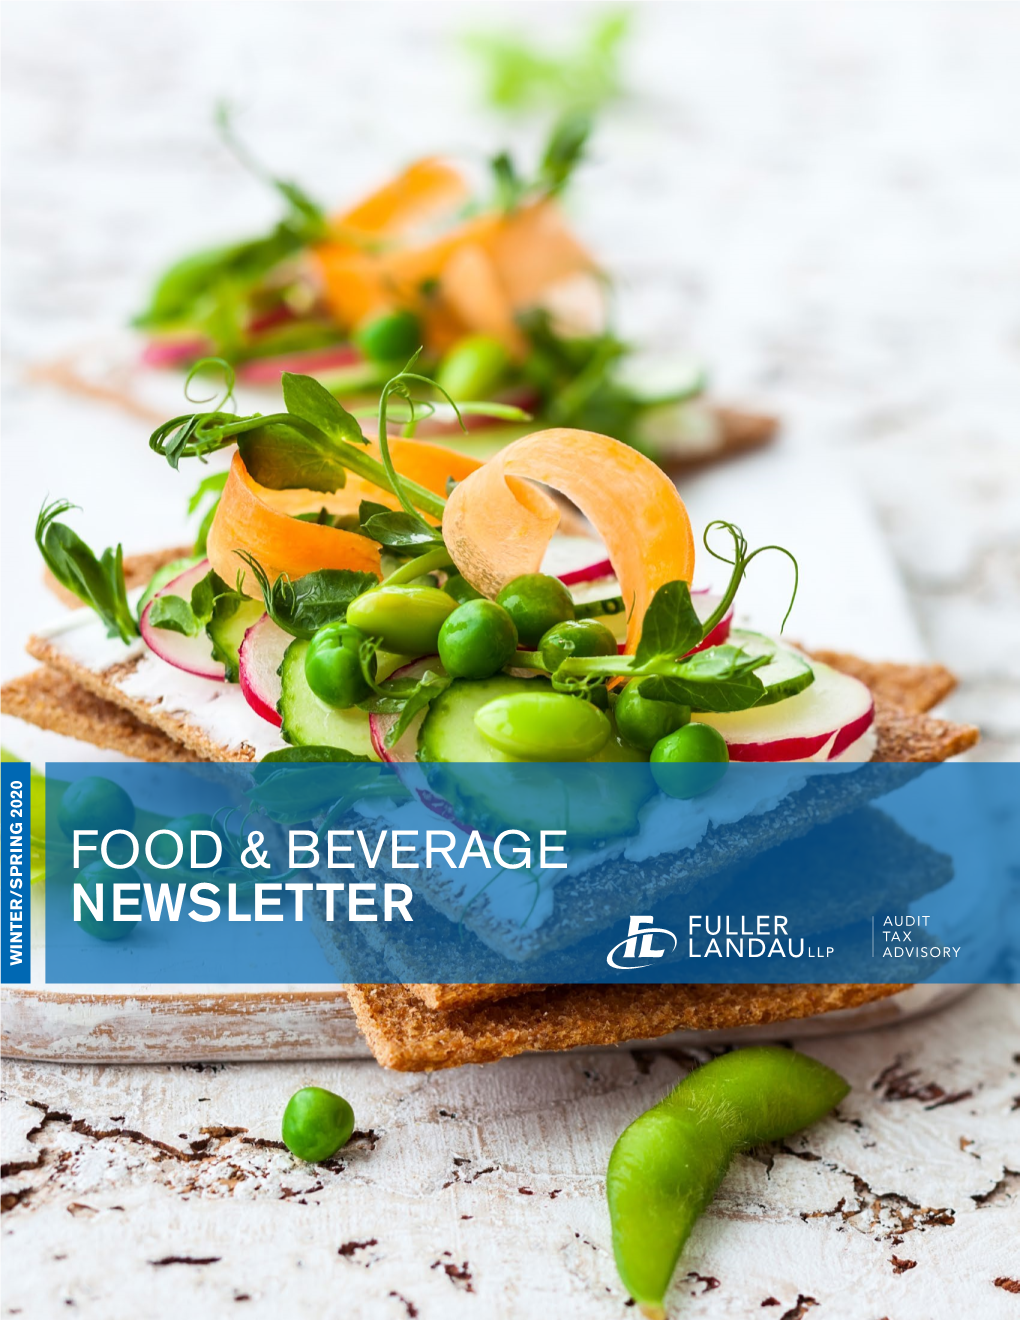 Food & Beverage Newsletter